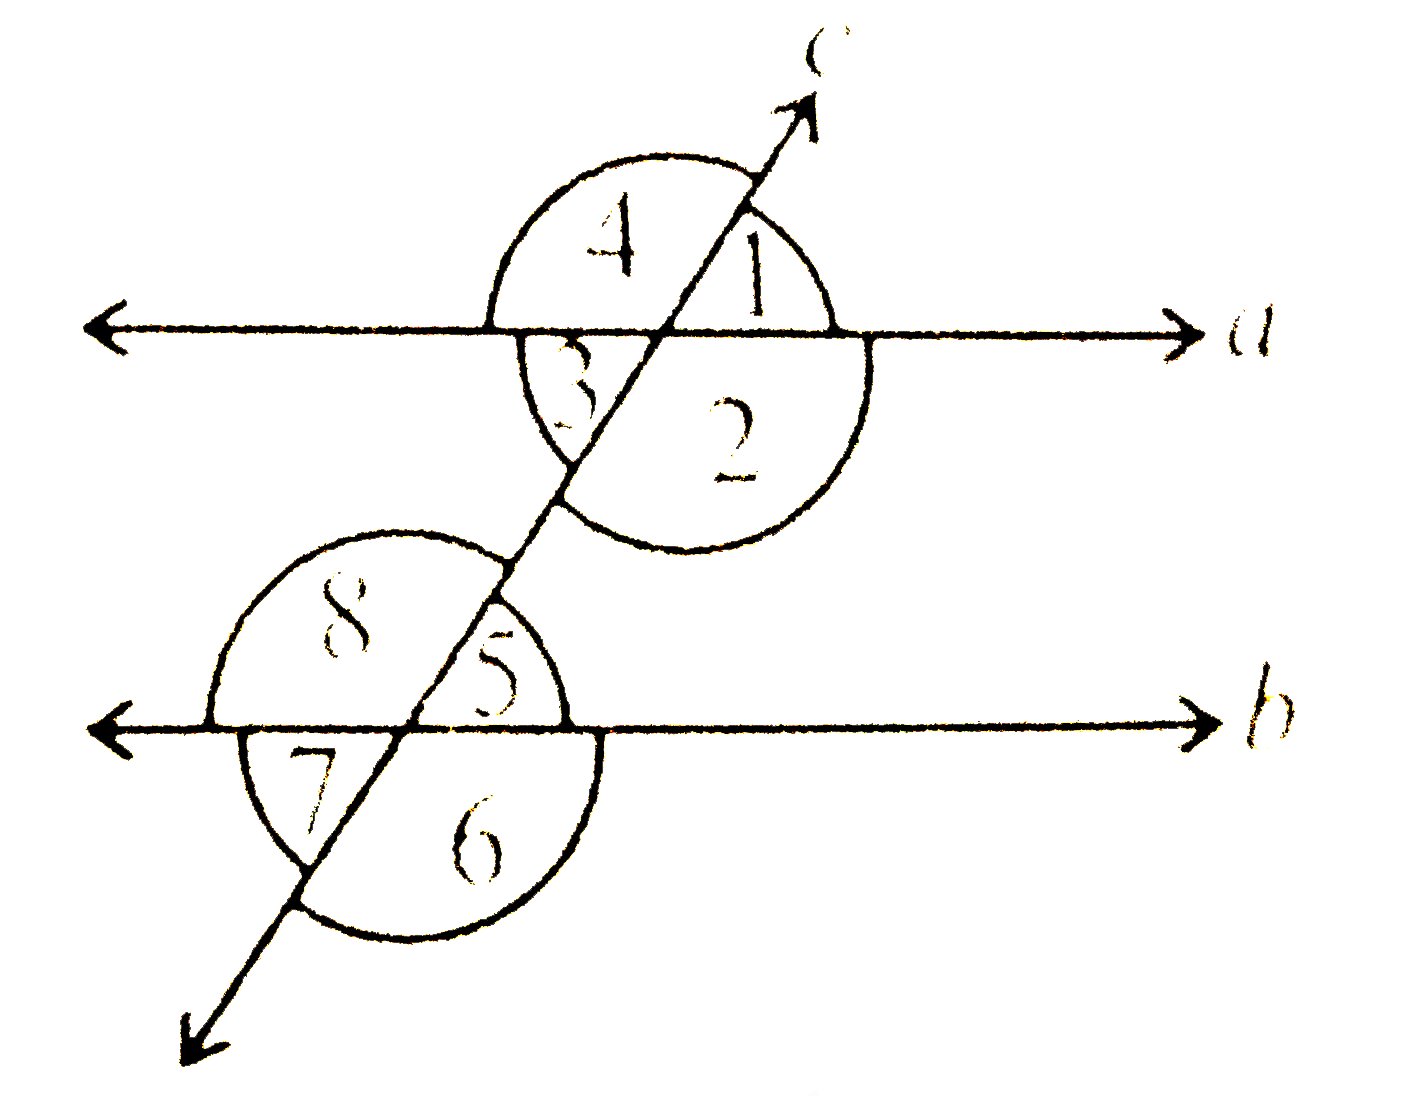 आकृति  में निम्नलिखित की पहचान कीजिए :   (i) संगत कोणों के युग्म     (ii) अंतः एकांतर कोणों के युग्म   (iii)तिर्यक छेदी रेखा के एक तरफ़ बने अंतः कोणों के युग्म   (iv) शीर्षाभिमुख कोण